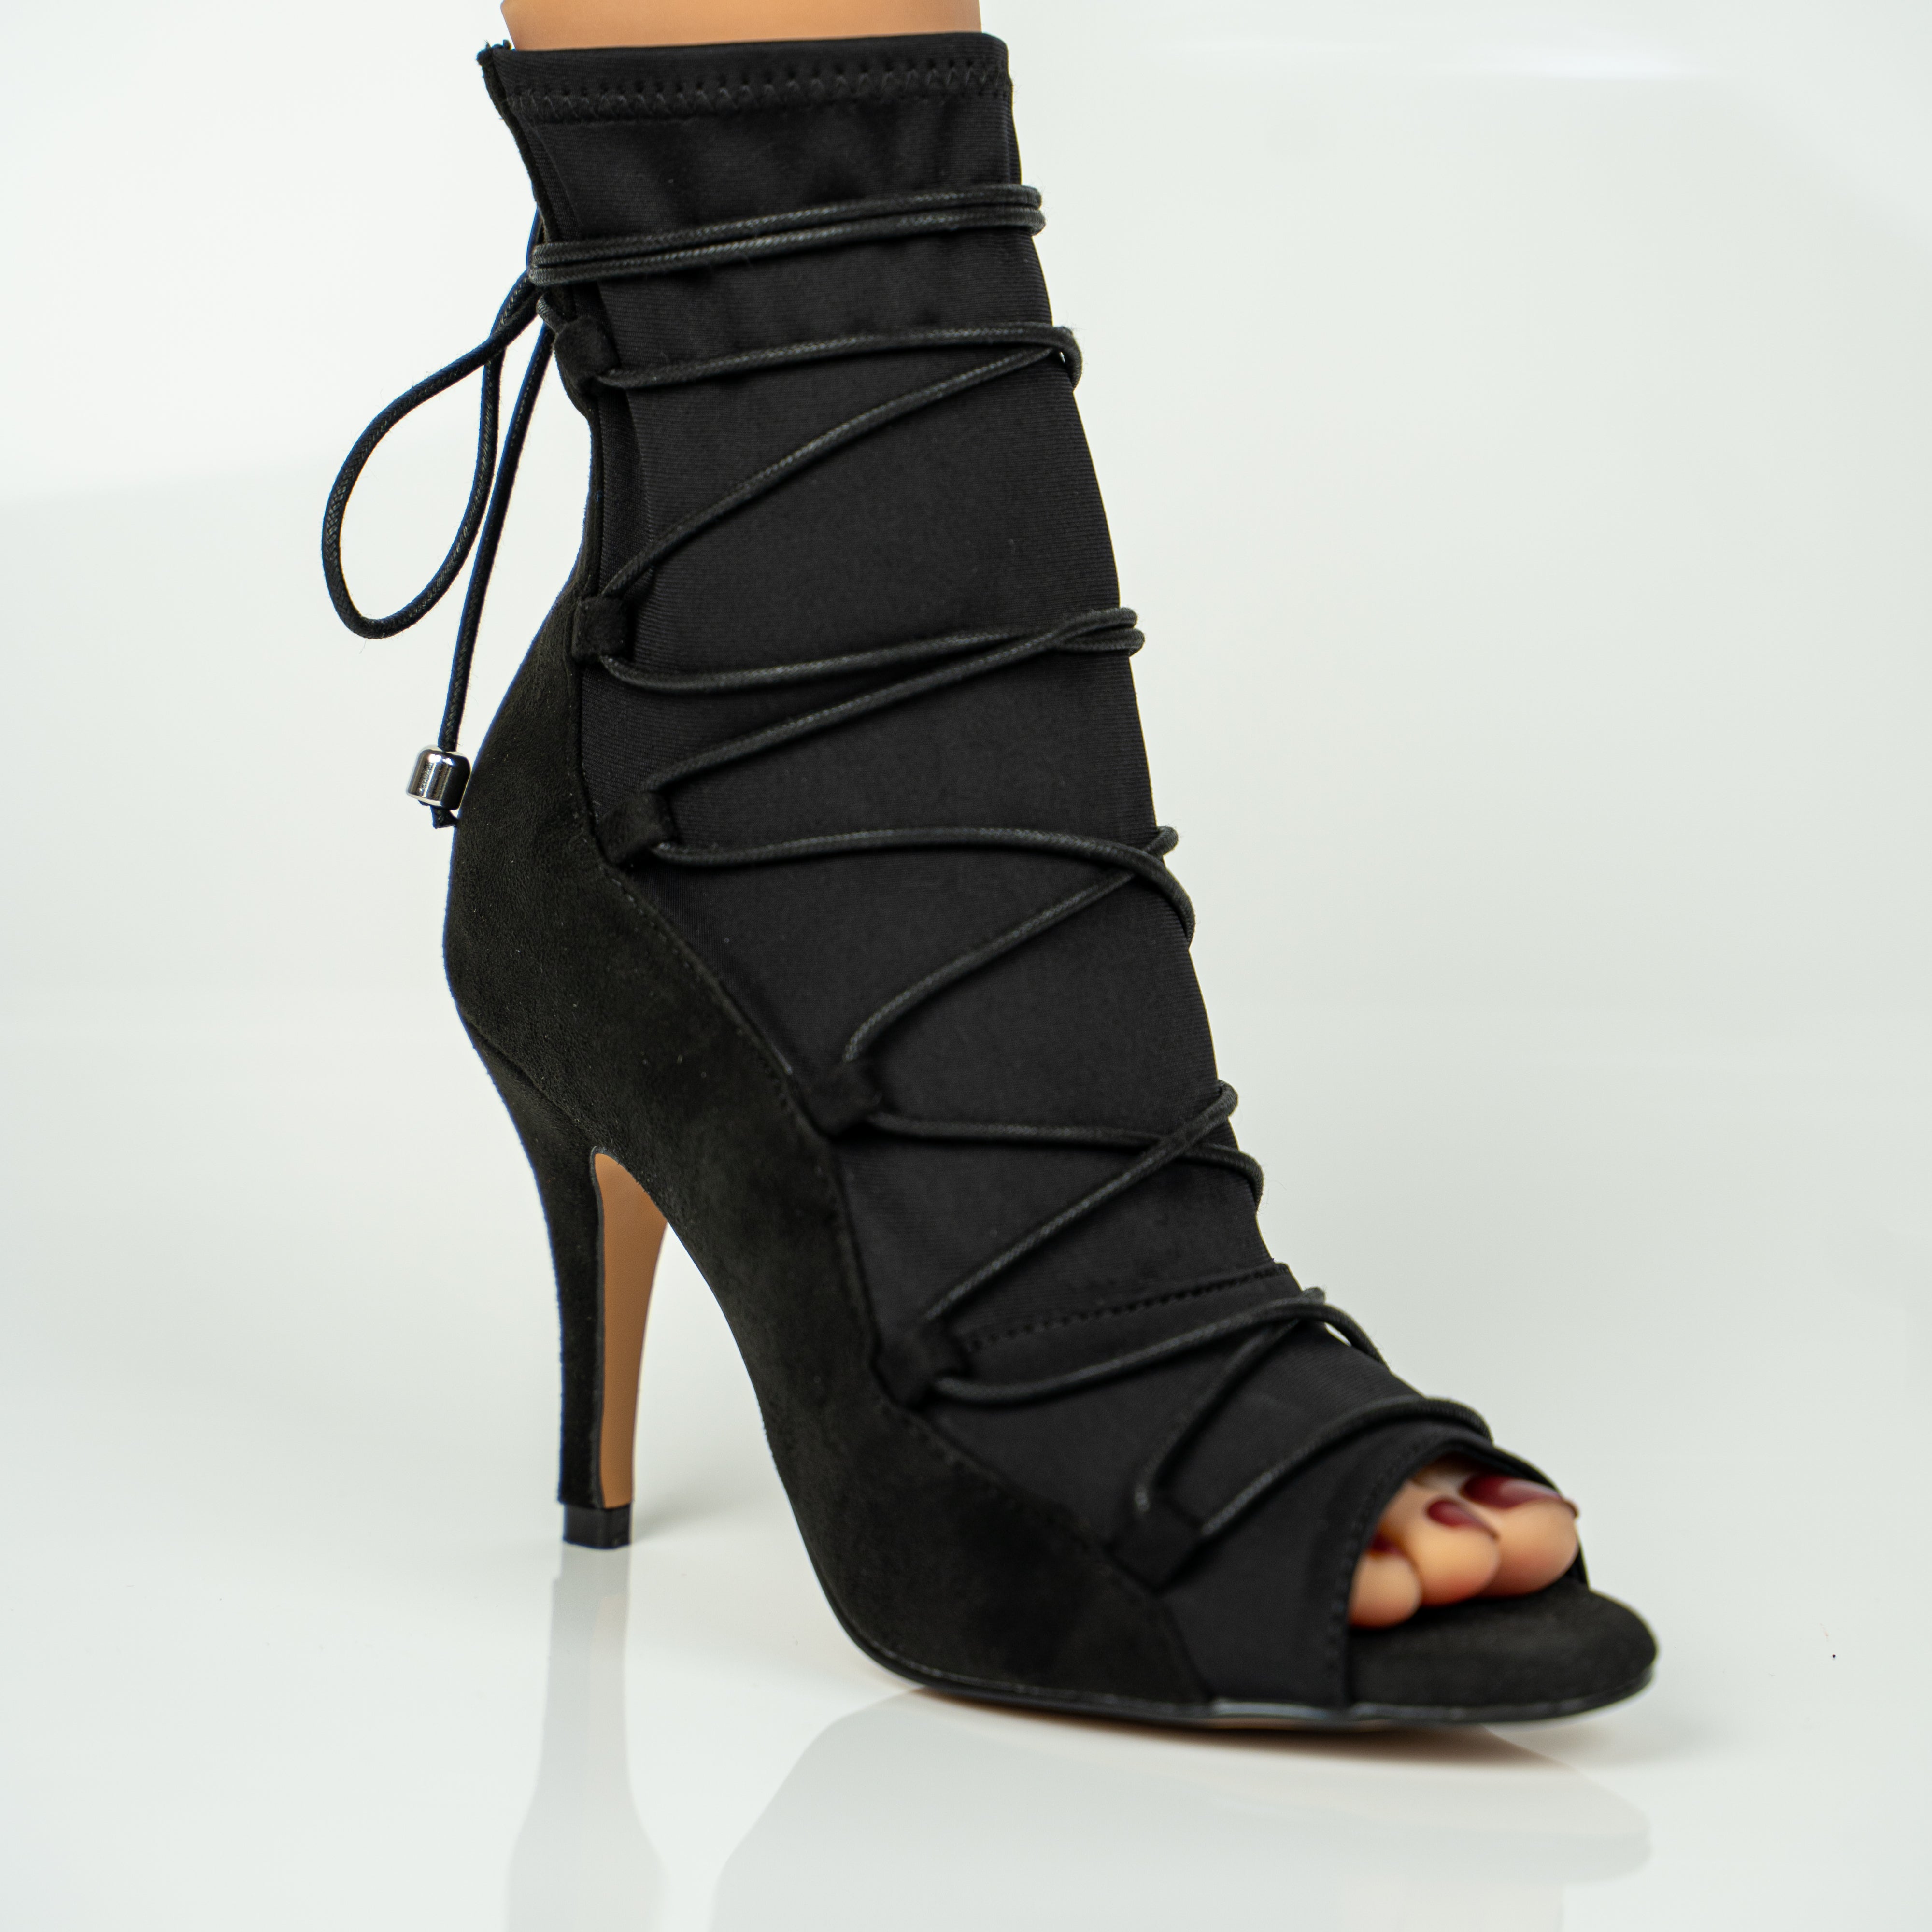 Black Peep-toe Mesh Stiletto Heels Boots Prom Shoes – Mislish